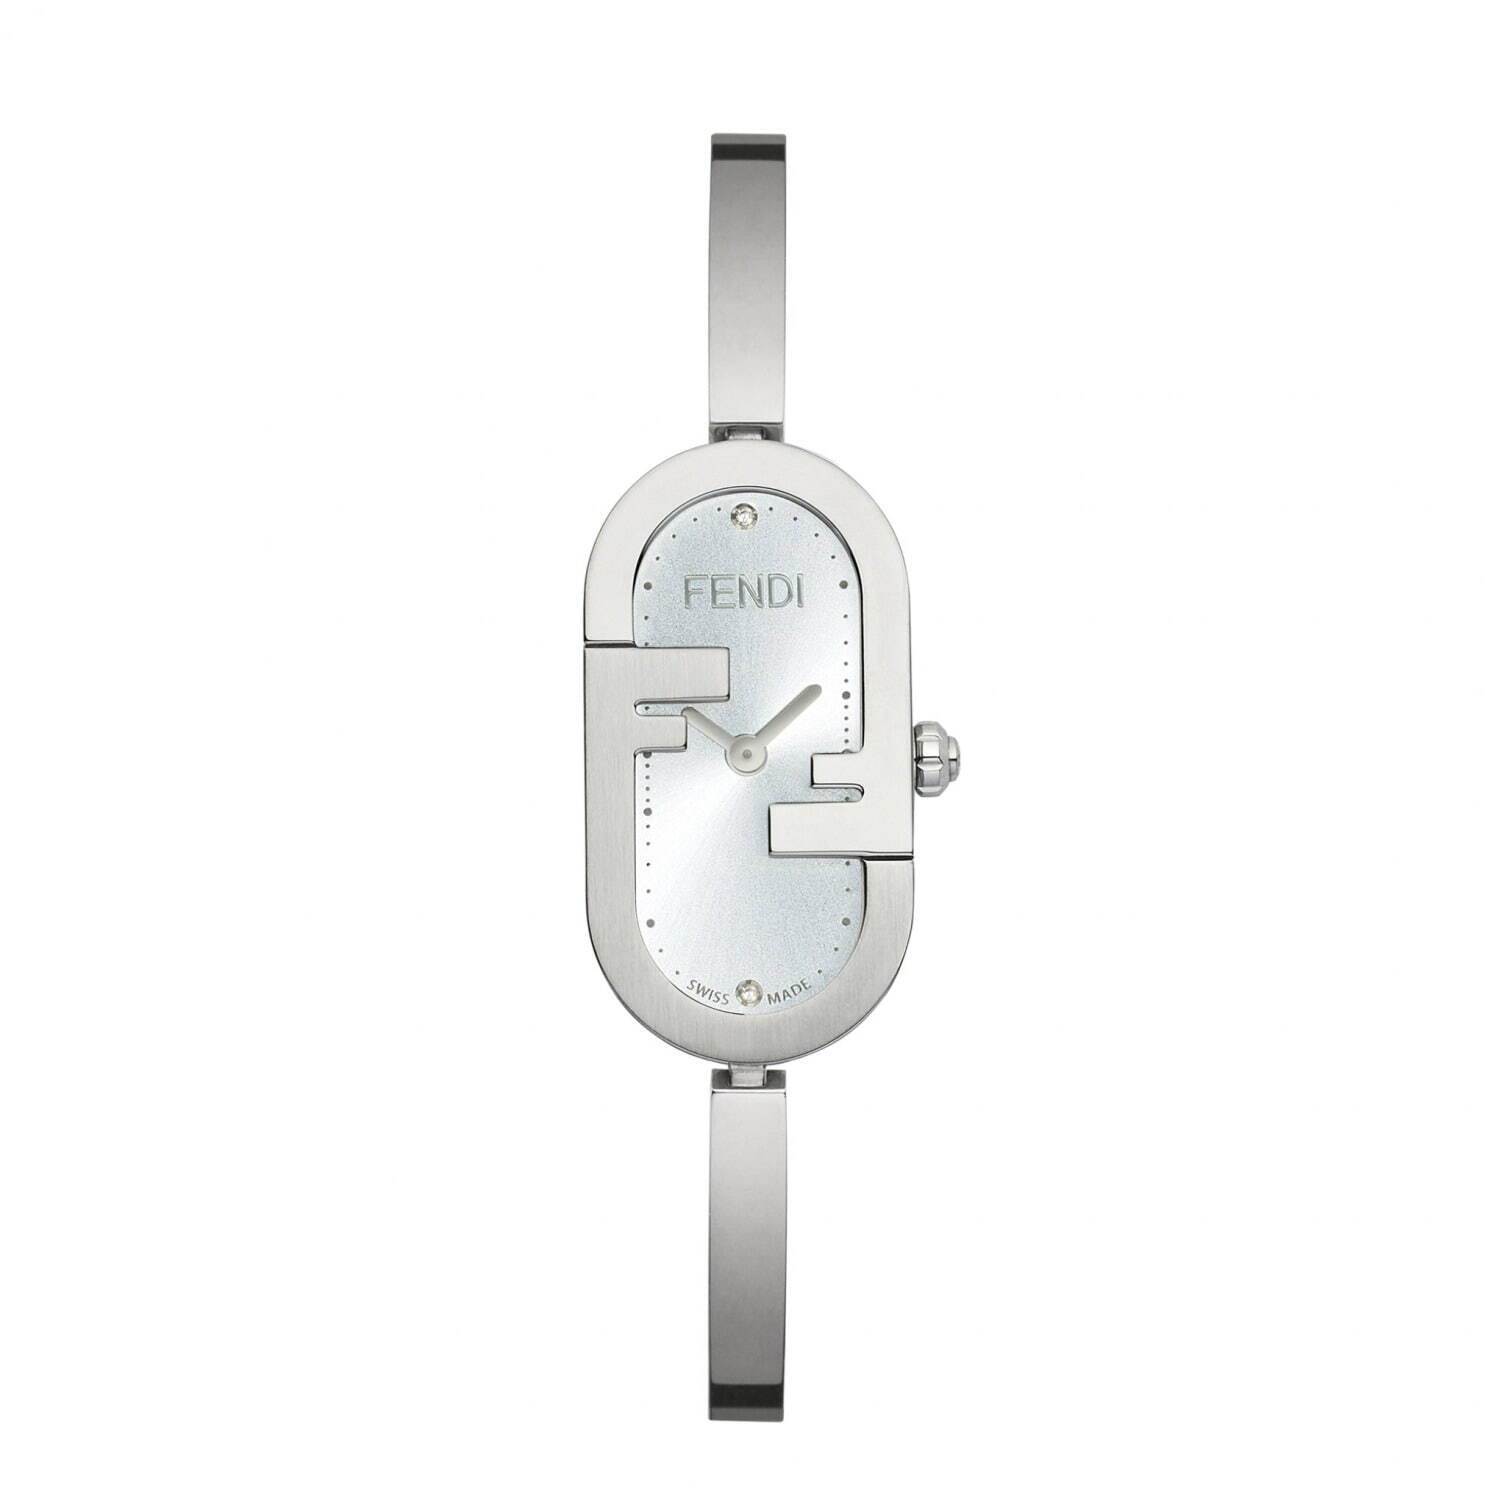 フェンディの新作腕時計「オーロック」オーバル型FFロゴのケース